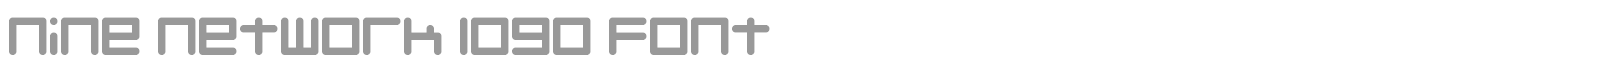 Font Nine Network logo font